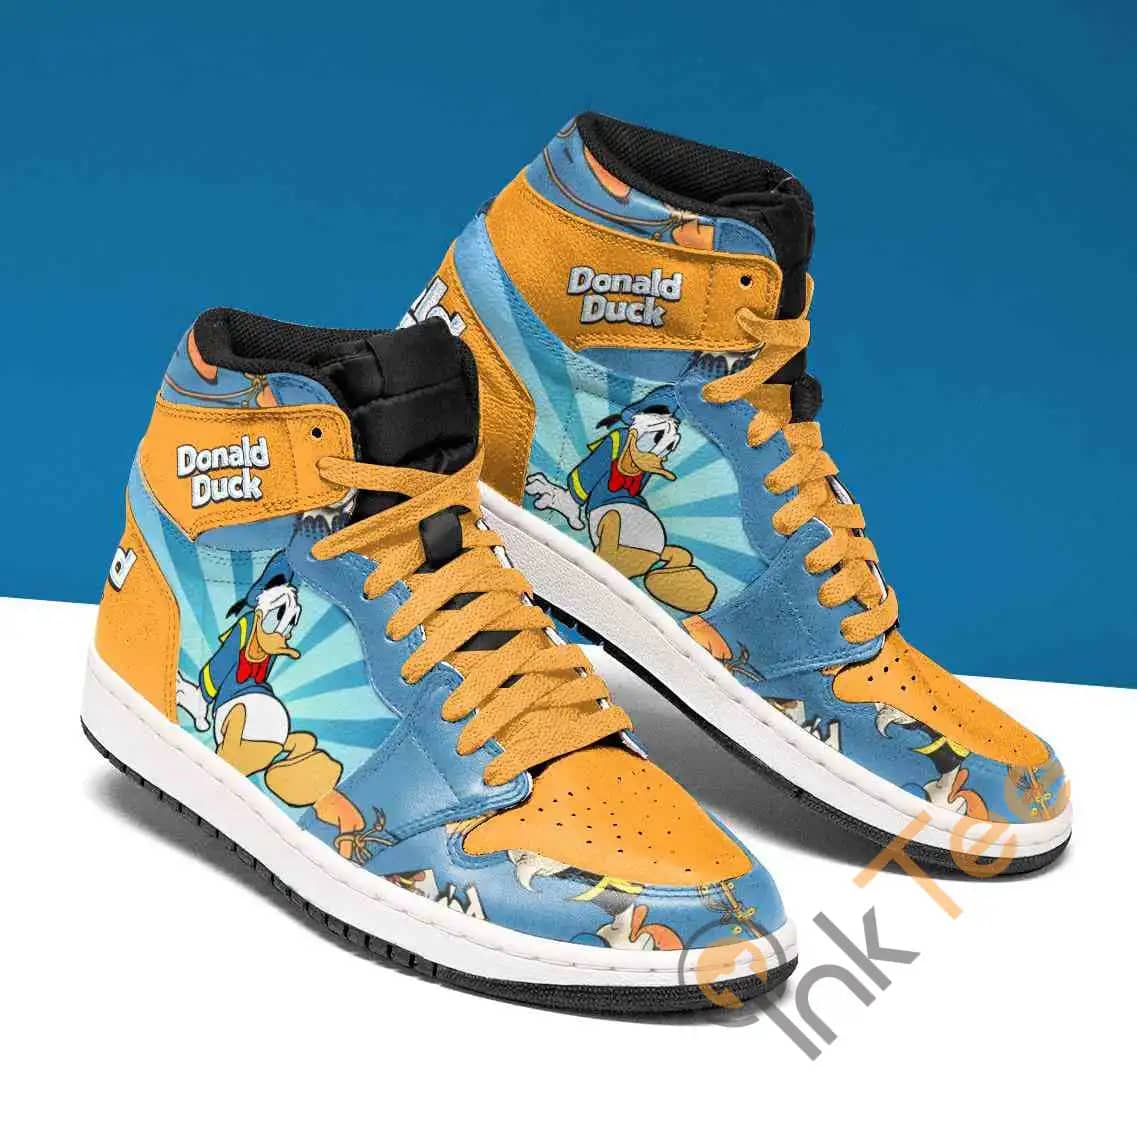 Donald Duck Custom Air Jordan Shoes